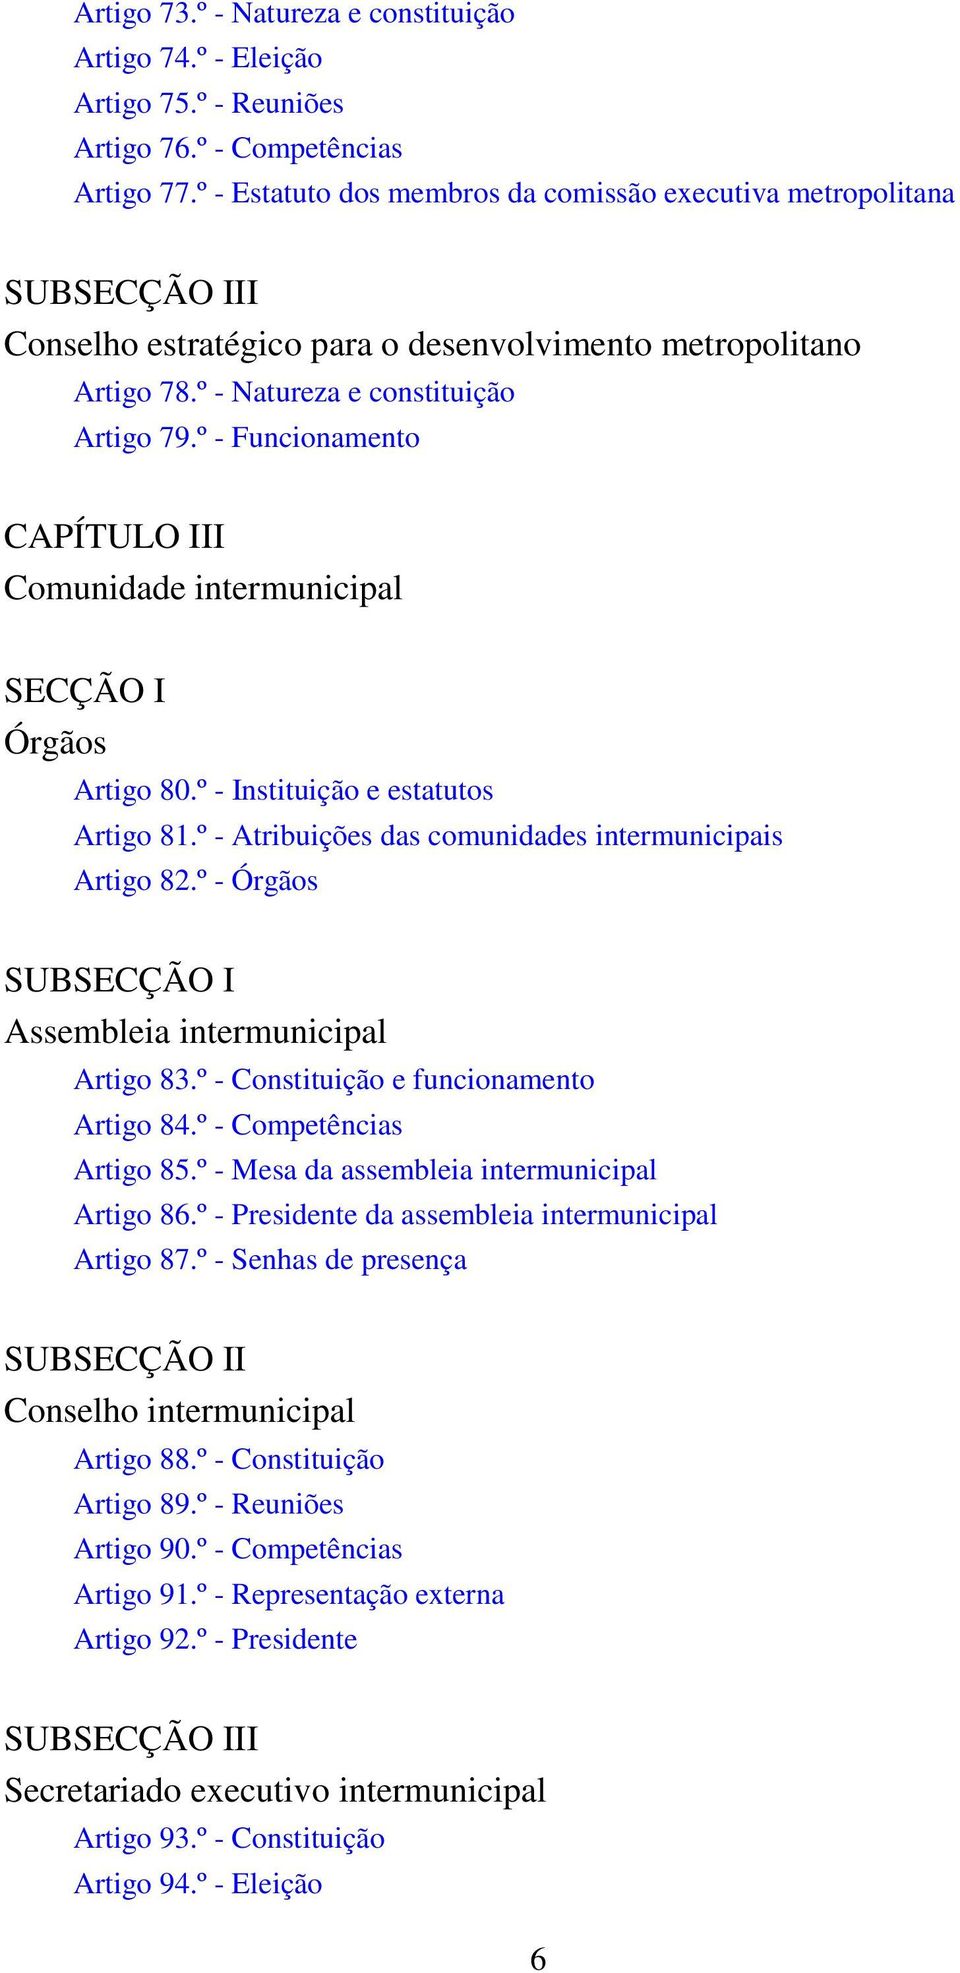 º - Funcionamento CAPÍTULO III Comunidade intermunicipal SECÇÃO I Órgãos Artigo 80.º - Instituição e estatutos Artigo 81.º - Atribuições das comunidades intermunicipais Artigo 82.